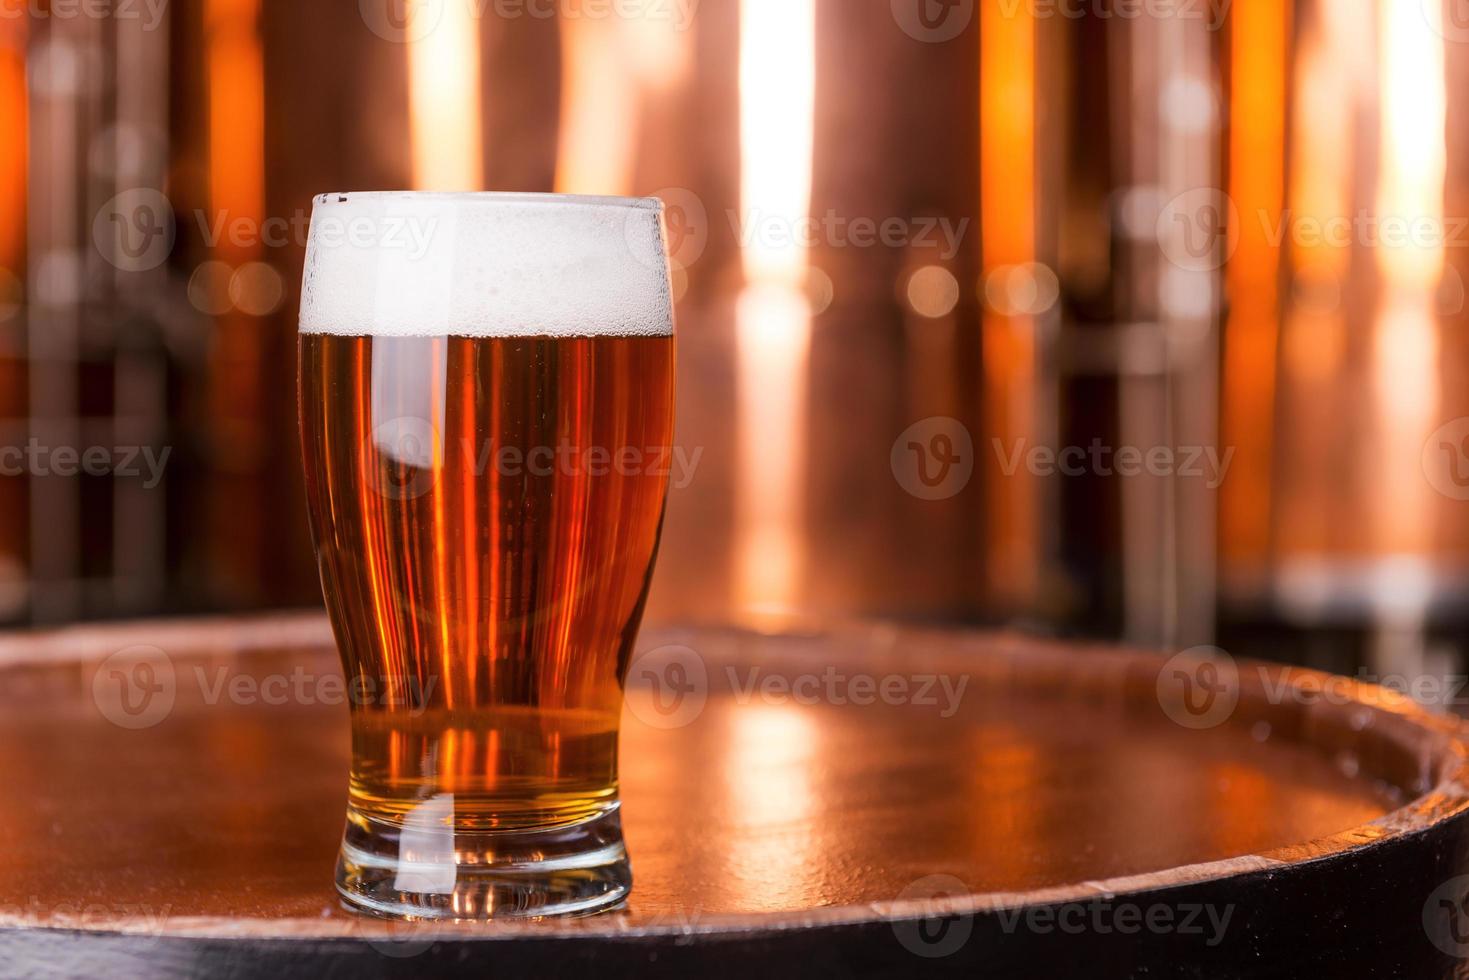 vers bier. detailopname van glas met bier staand Aan de houten vat met metaal containers in de achtergrond foto